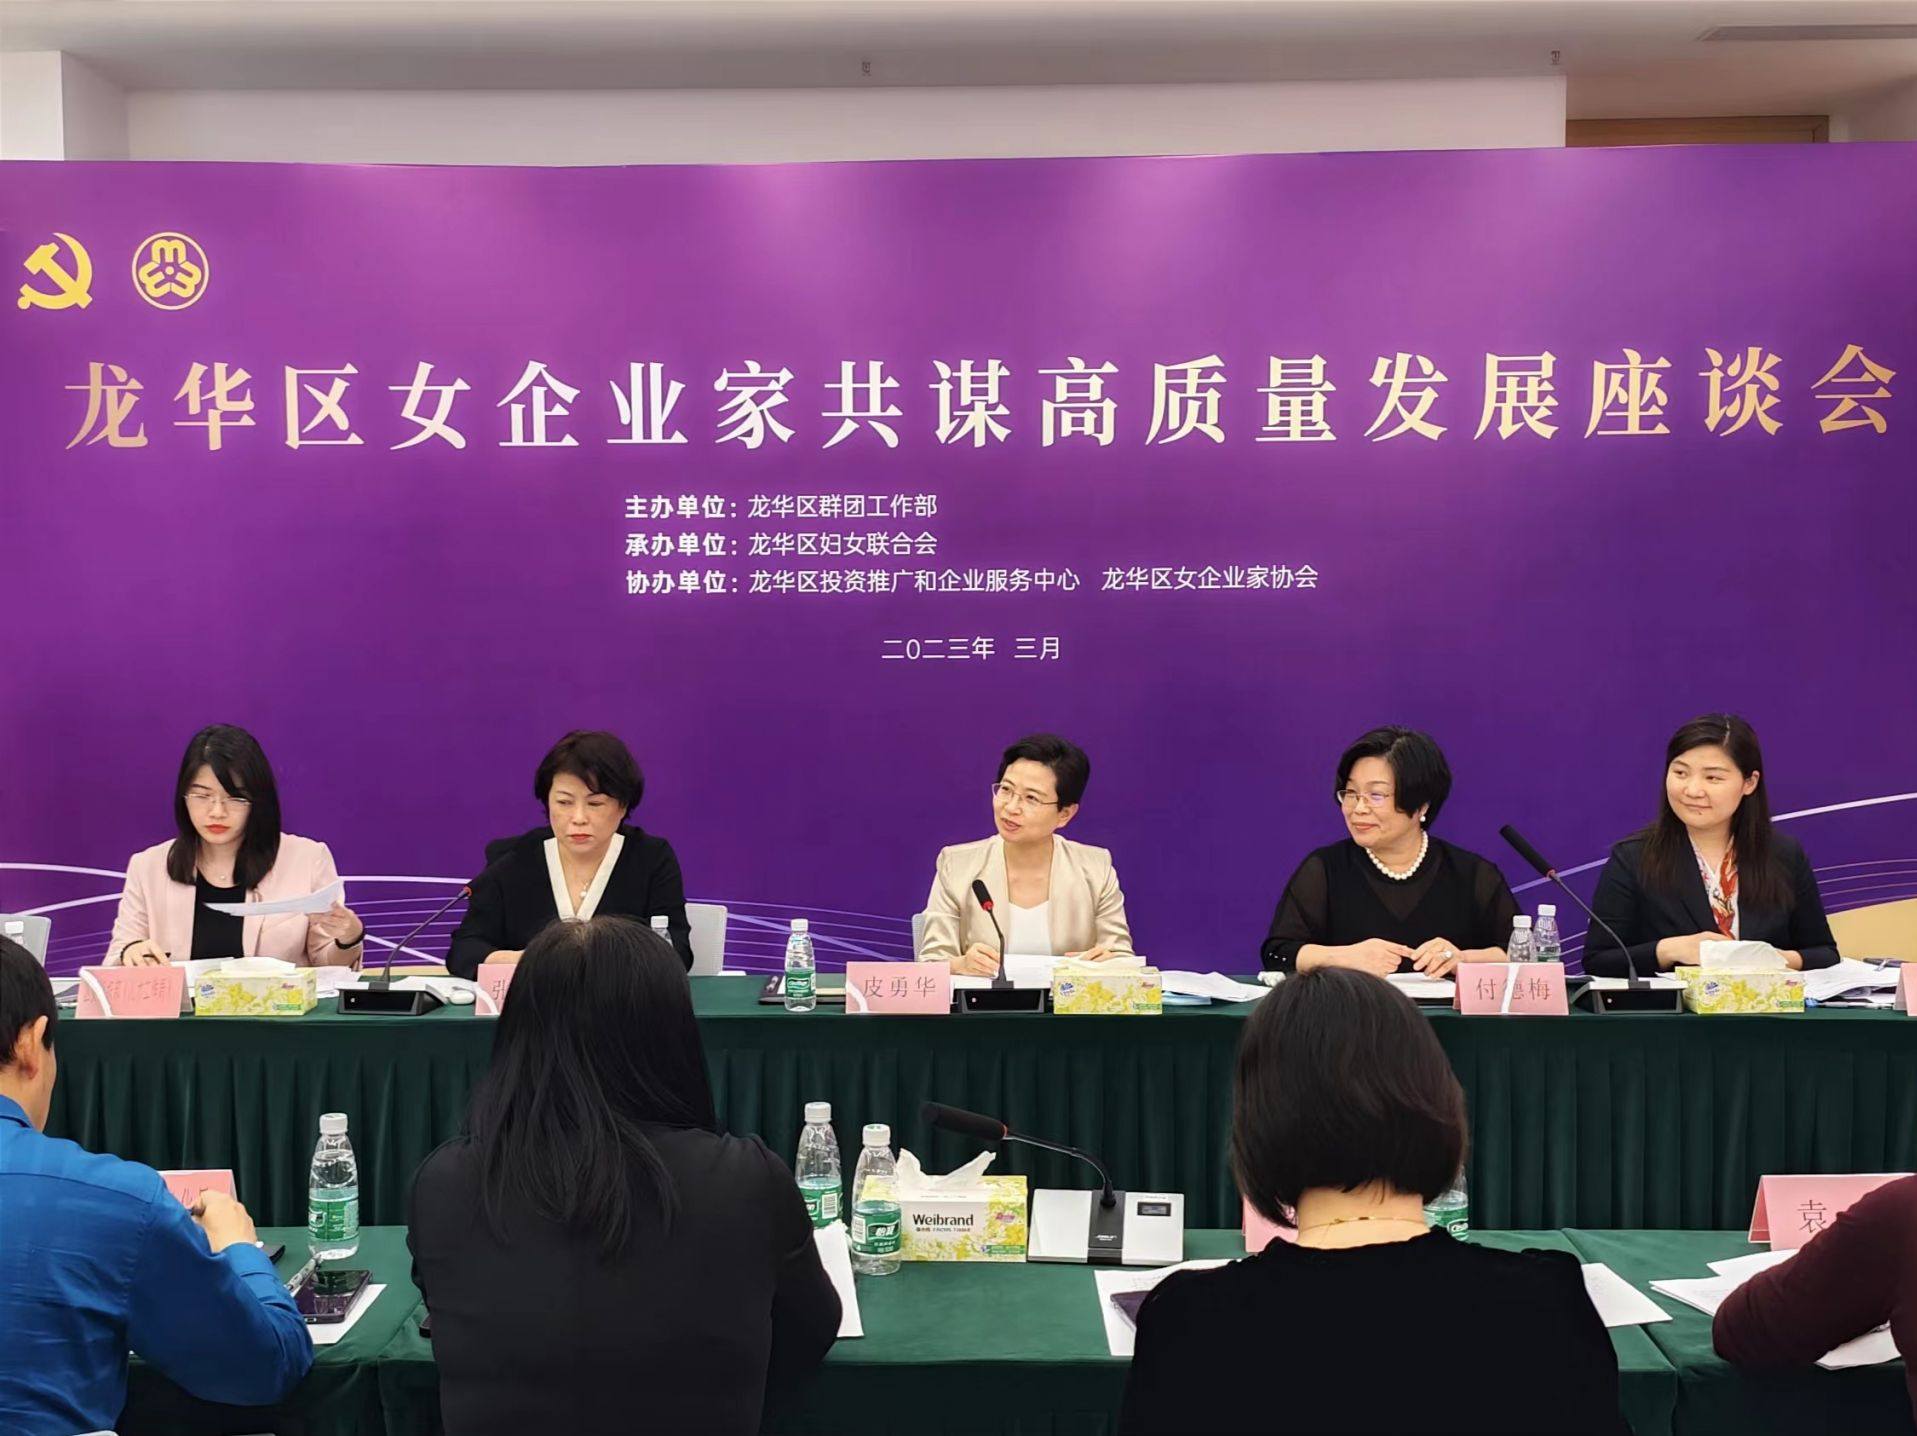 龙华区妇联举办女企业家共谋高质量发展座谈会